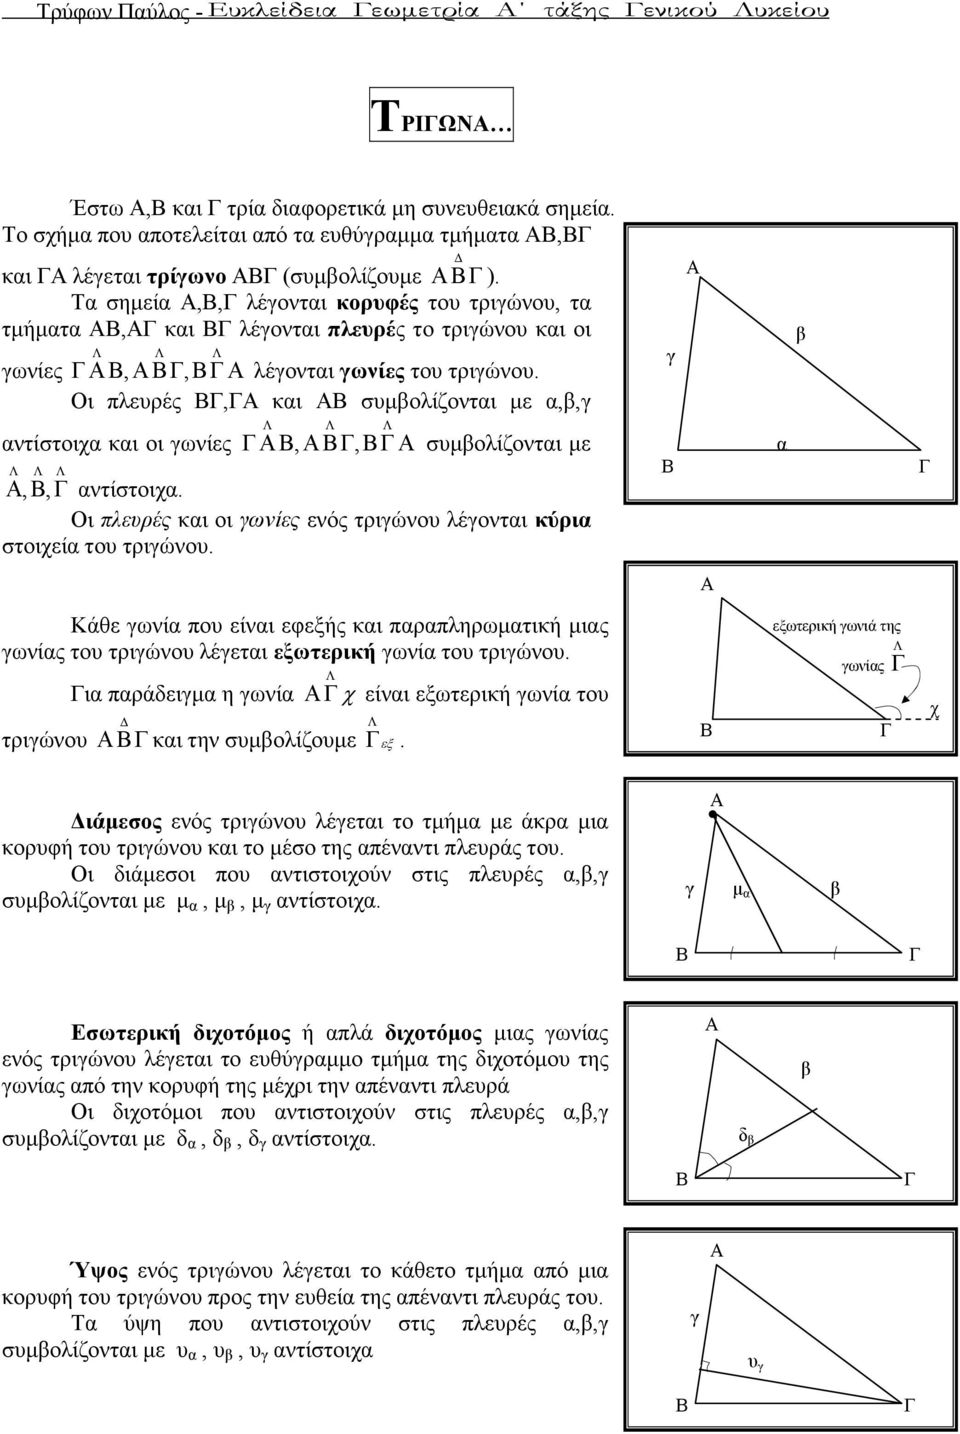 ι πλευρές, και συµβολίζονται µε α,β,γ αντίστοιχα και οι γωνίες,, συµβολίζονται µε,, αντίστοιχα. ι πλευρές και οι γωνίες ενός τριγώνου λέγονται κύρια στοιχεία του τριγώνου.